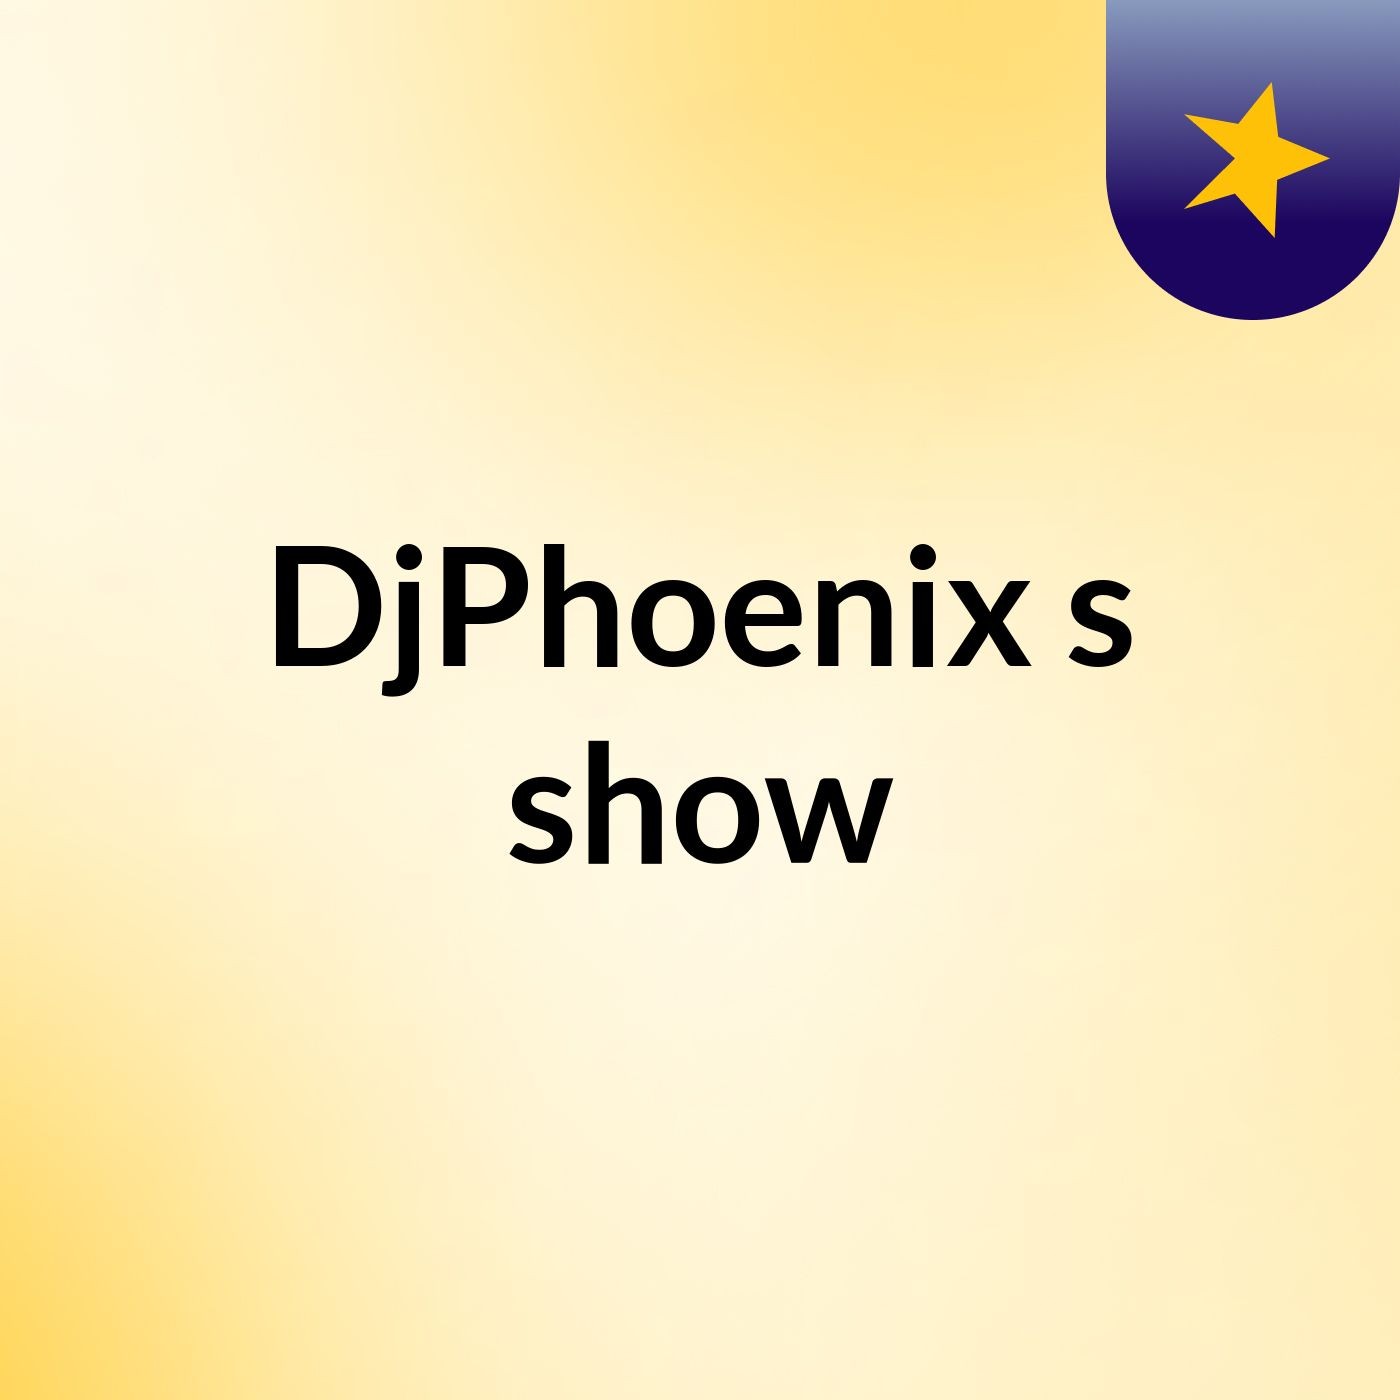 DjPhoenix's show